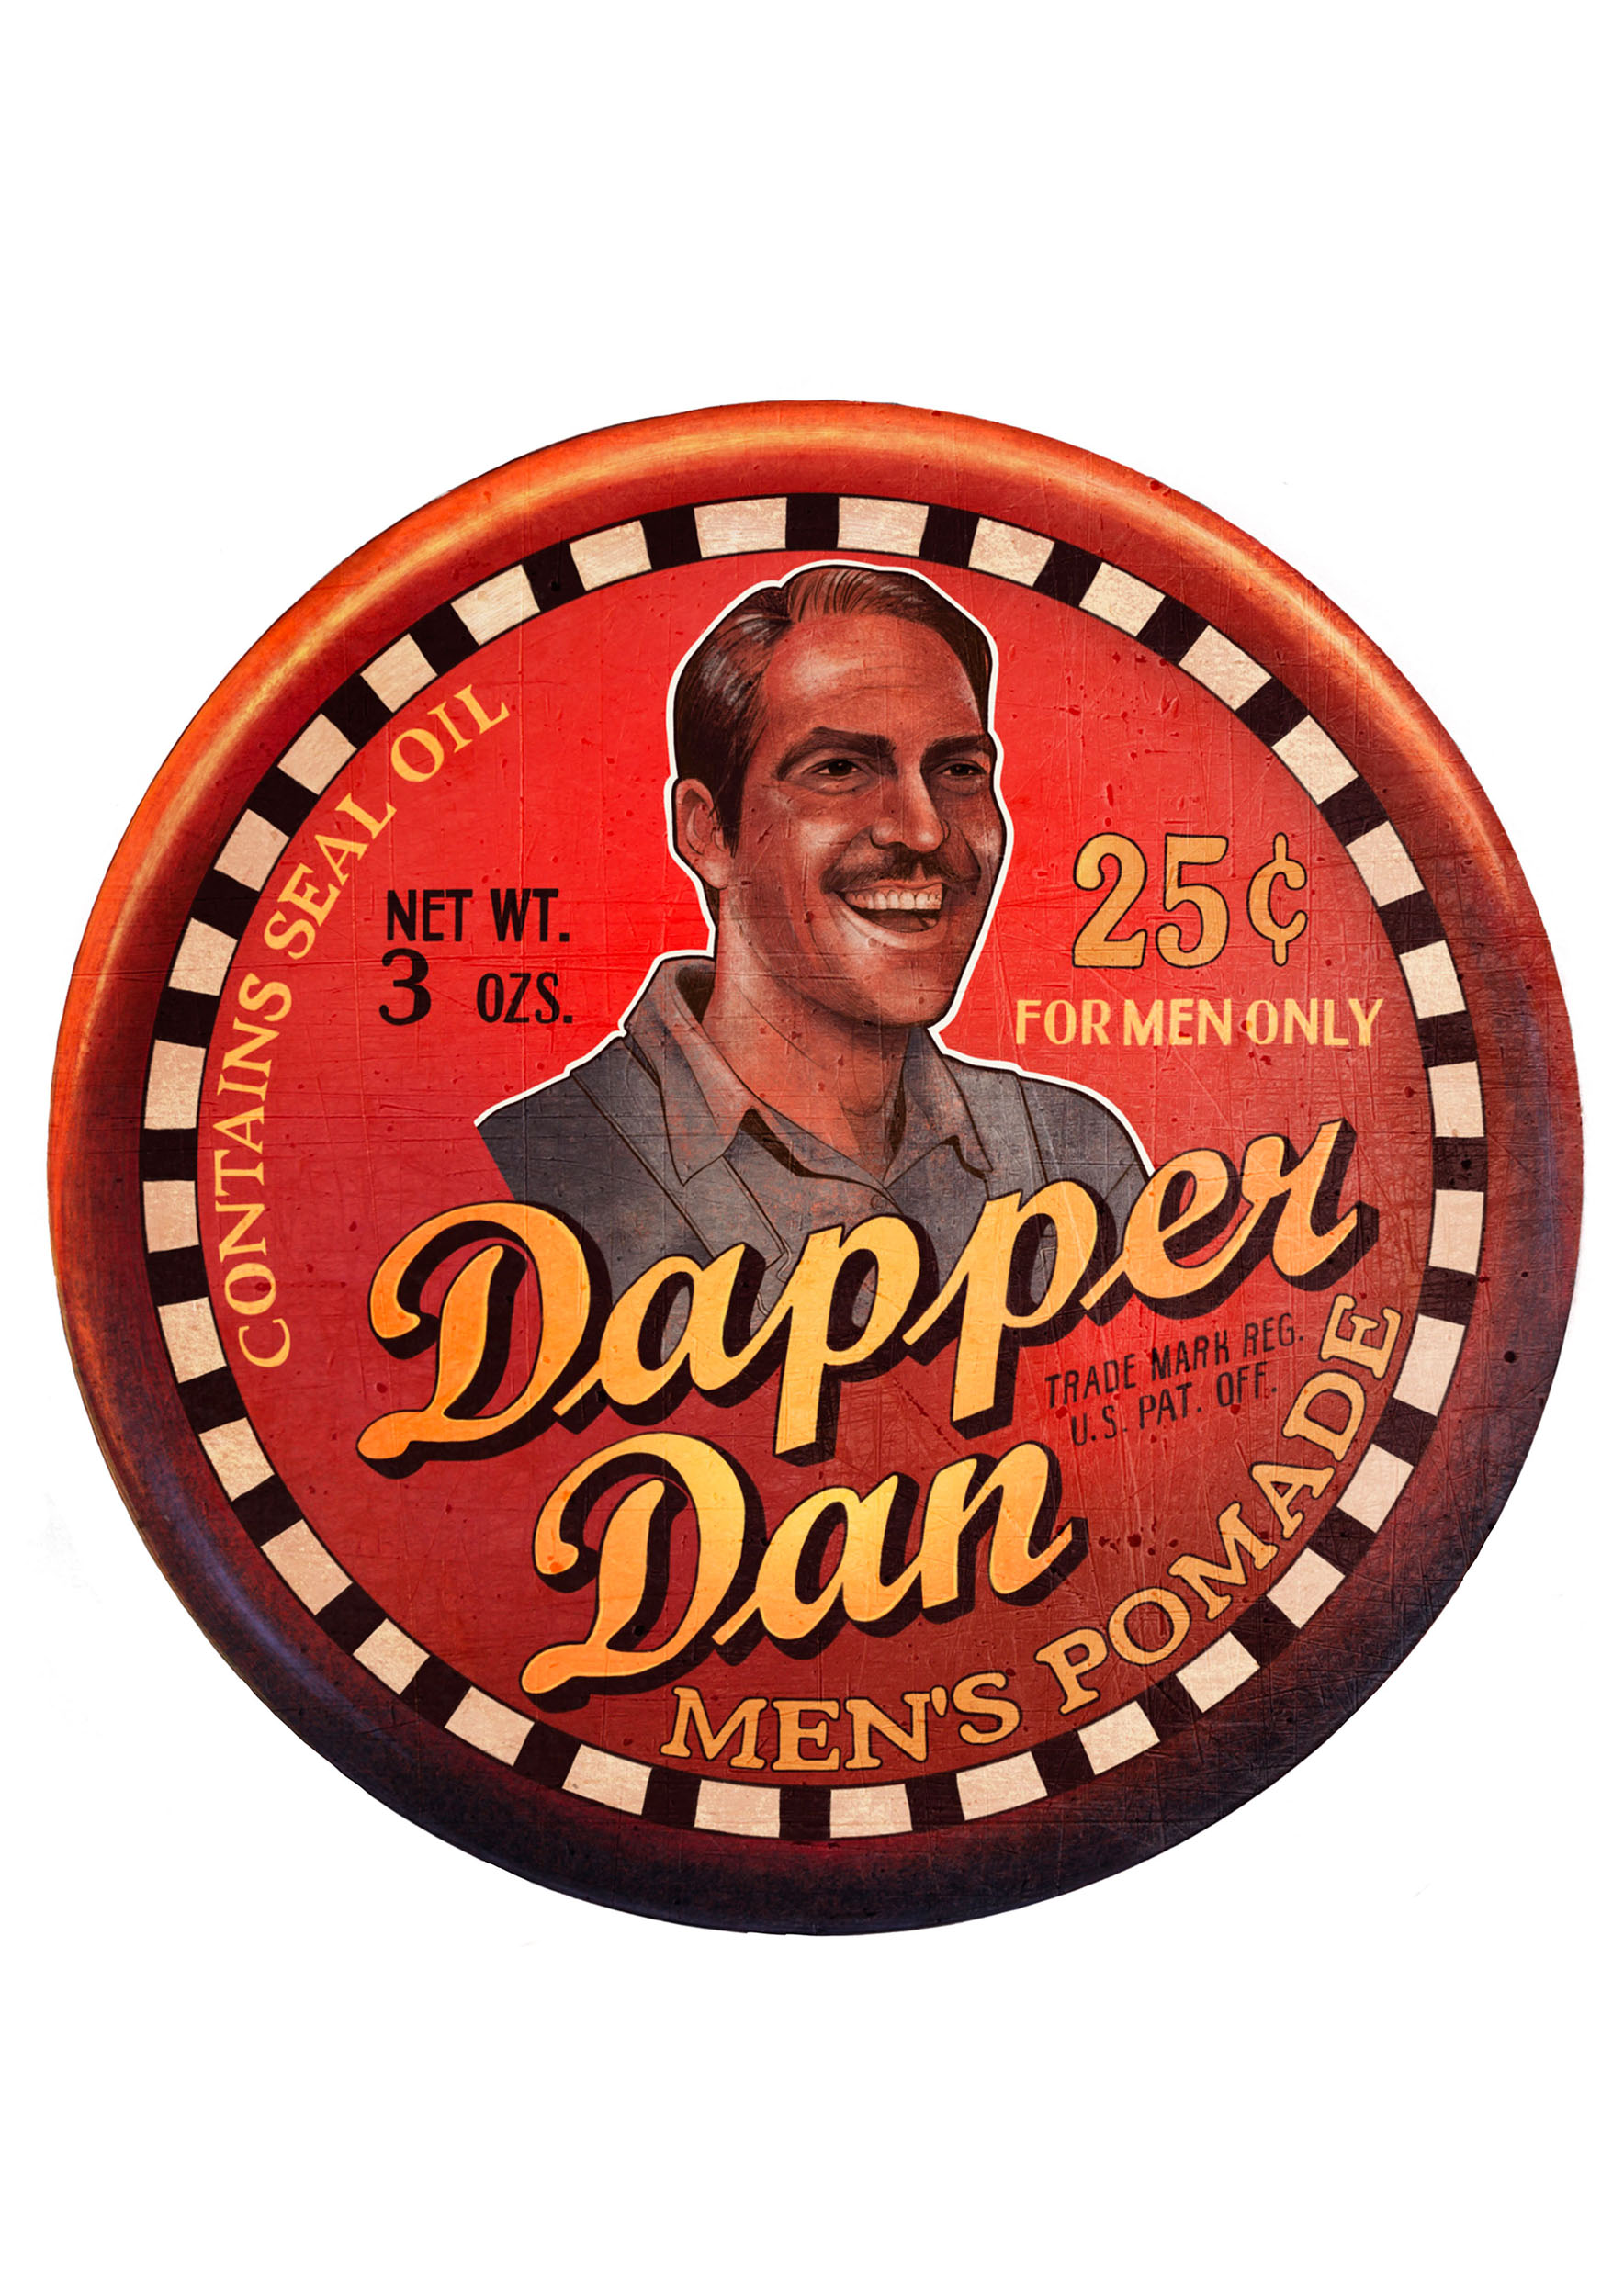 I’m a Dapper Dan man damnit!